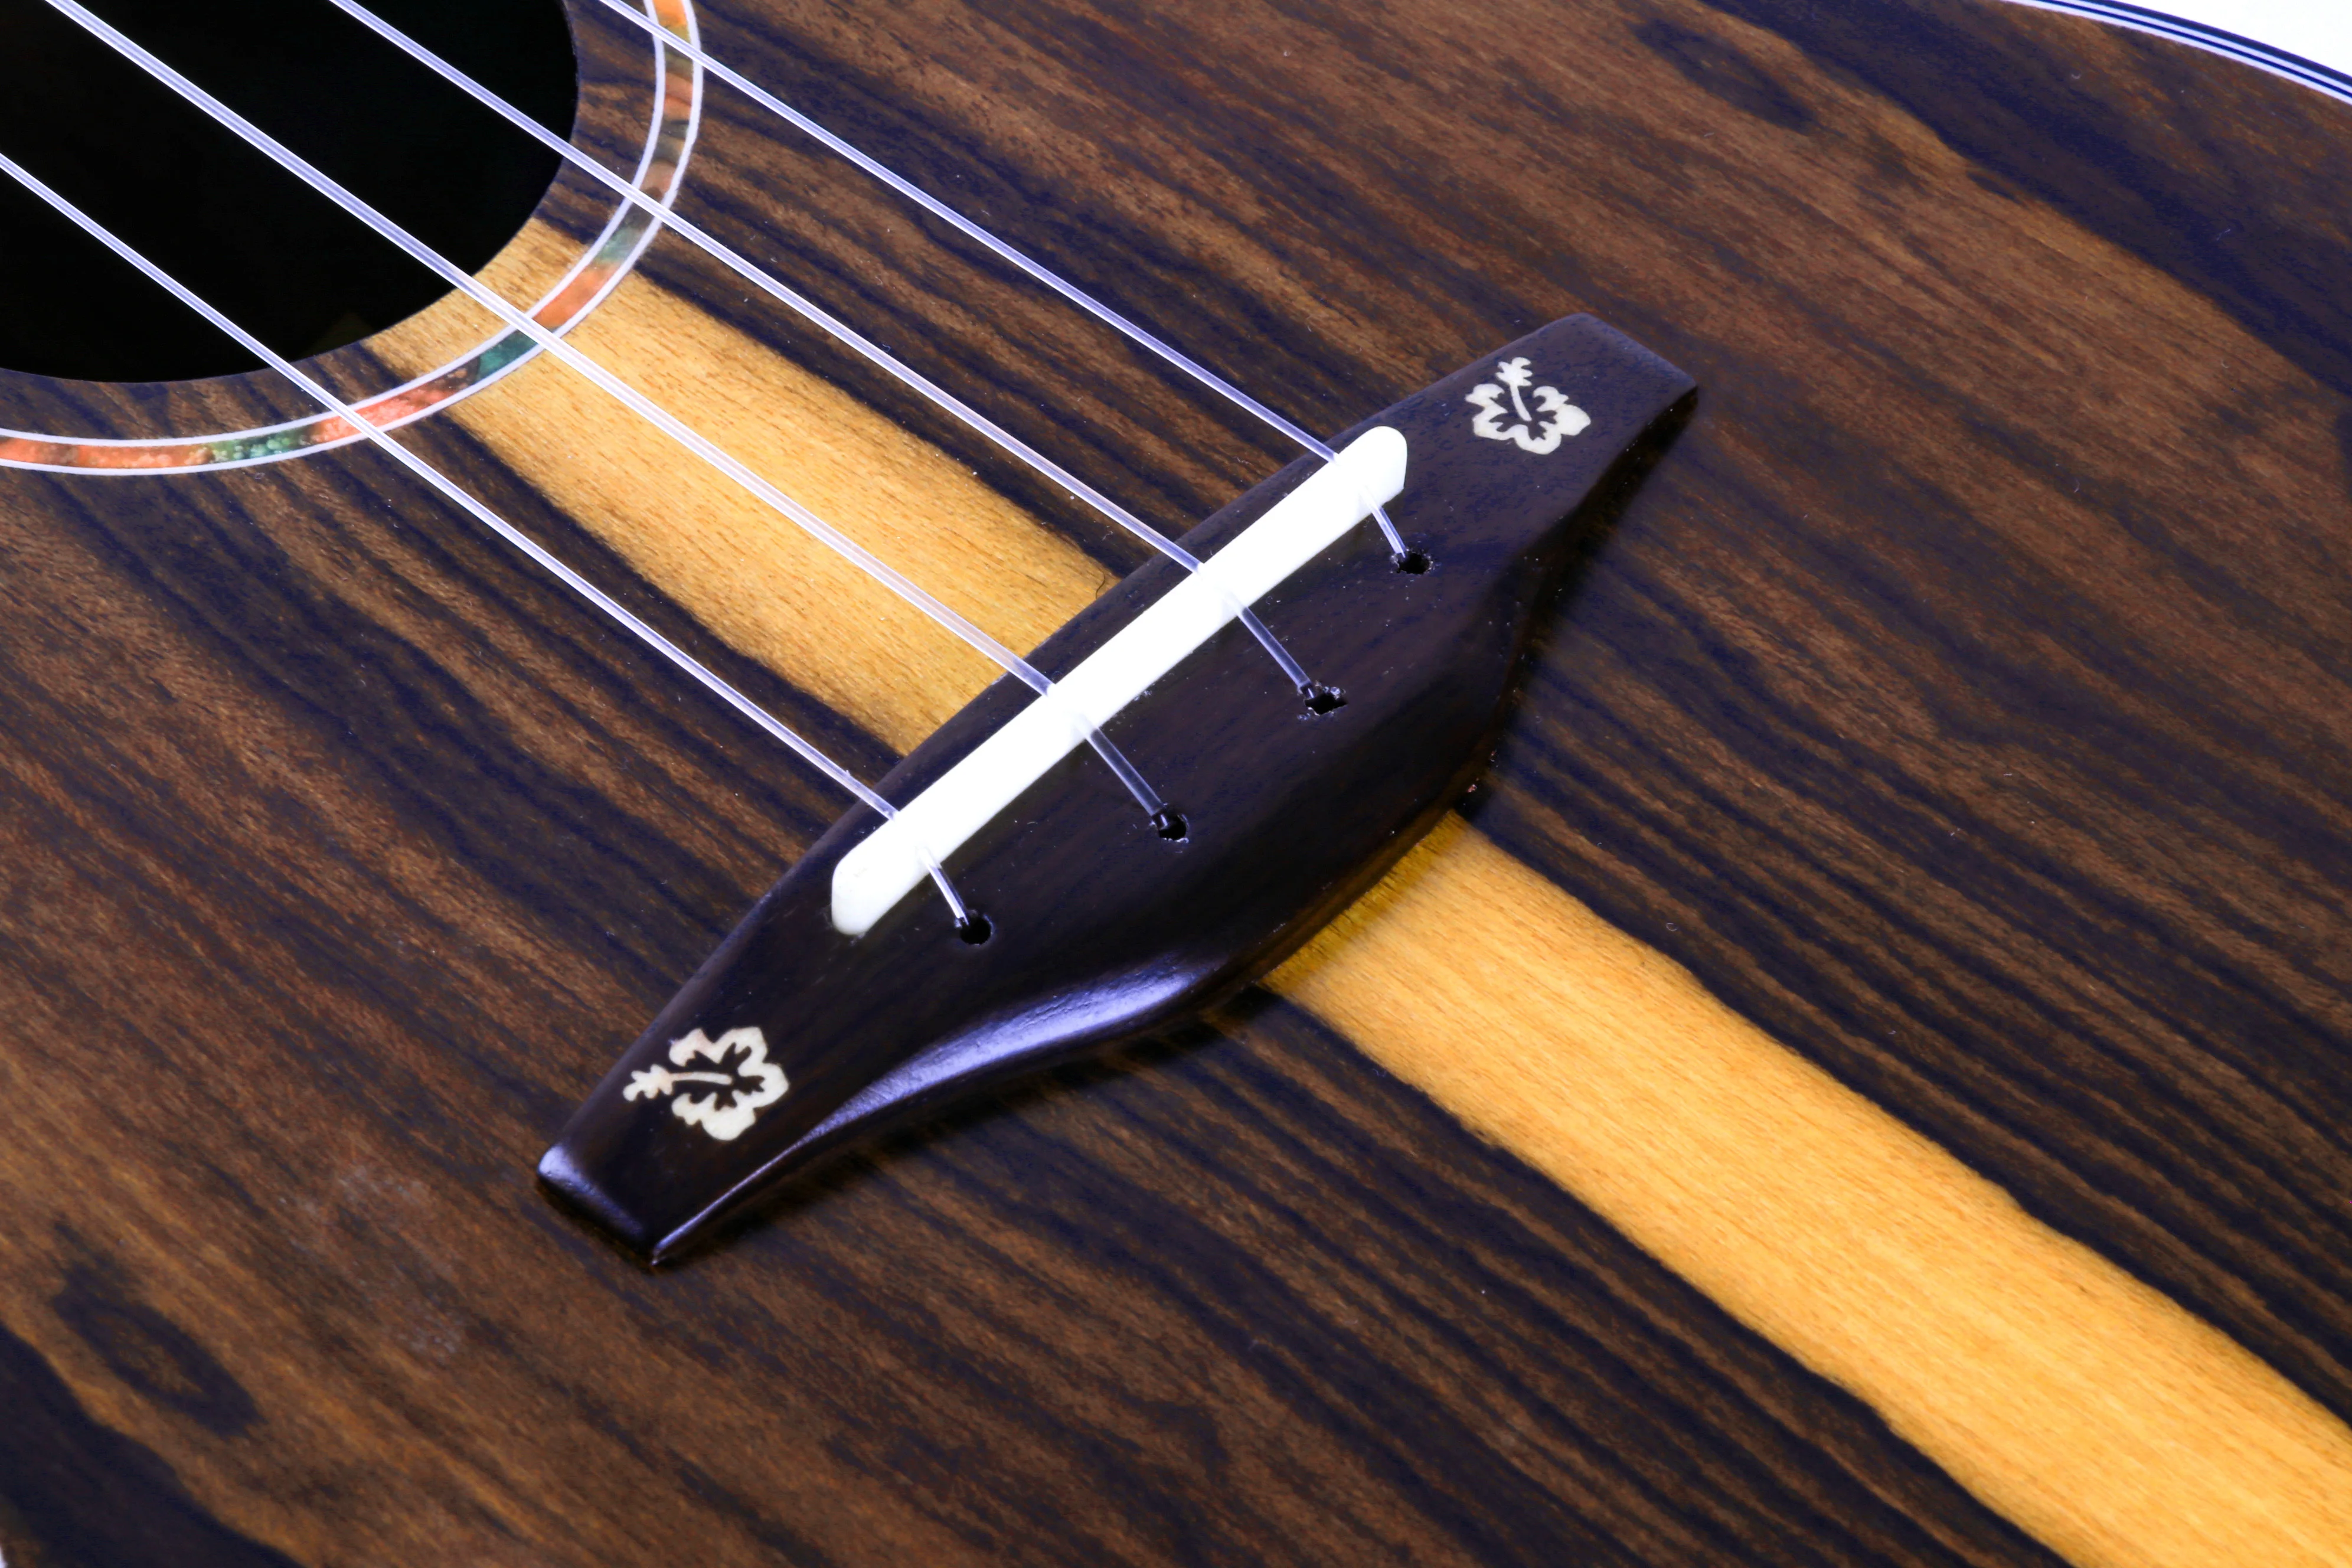 GKC-100 smiger концерт ziricote миниатюрная гитара укулеле детей ручной работы, выполненная из красного с миниатюрная гитара укулеле Сумка миниатюрная гитара укулеле-строка